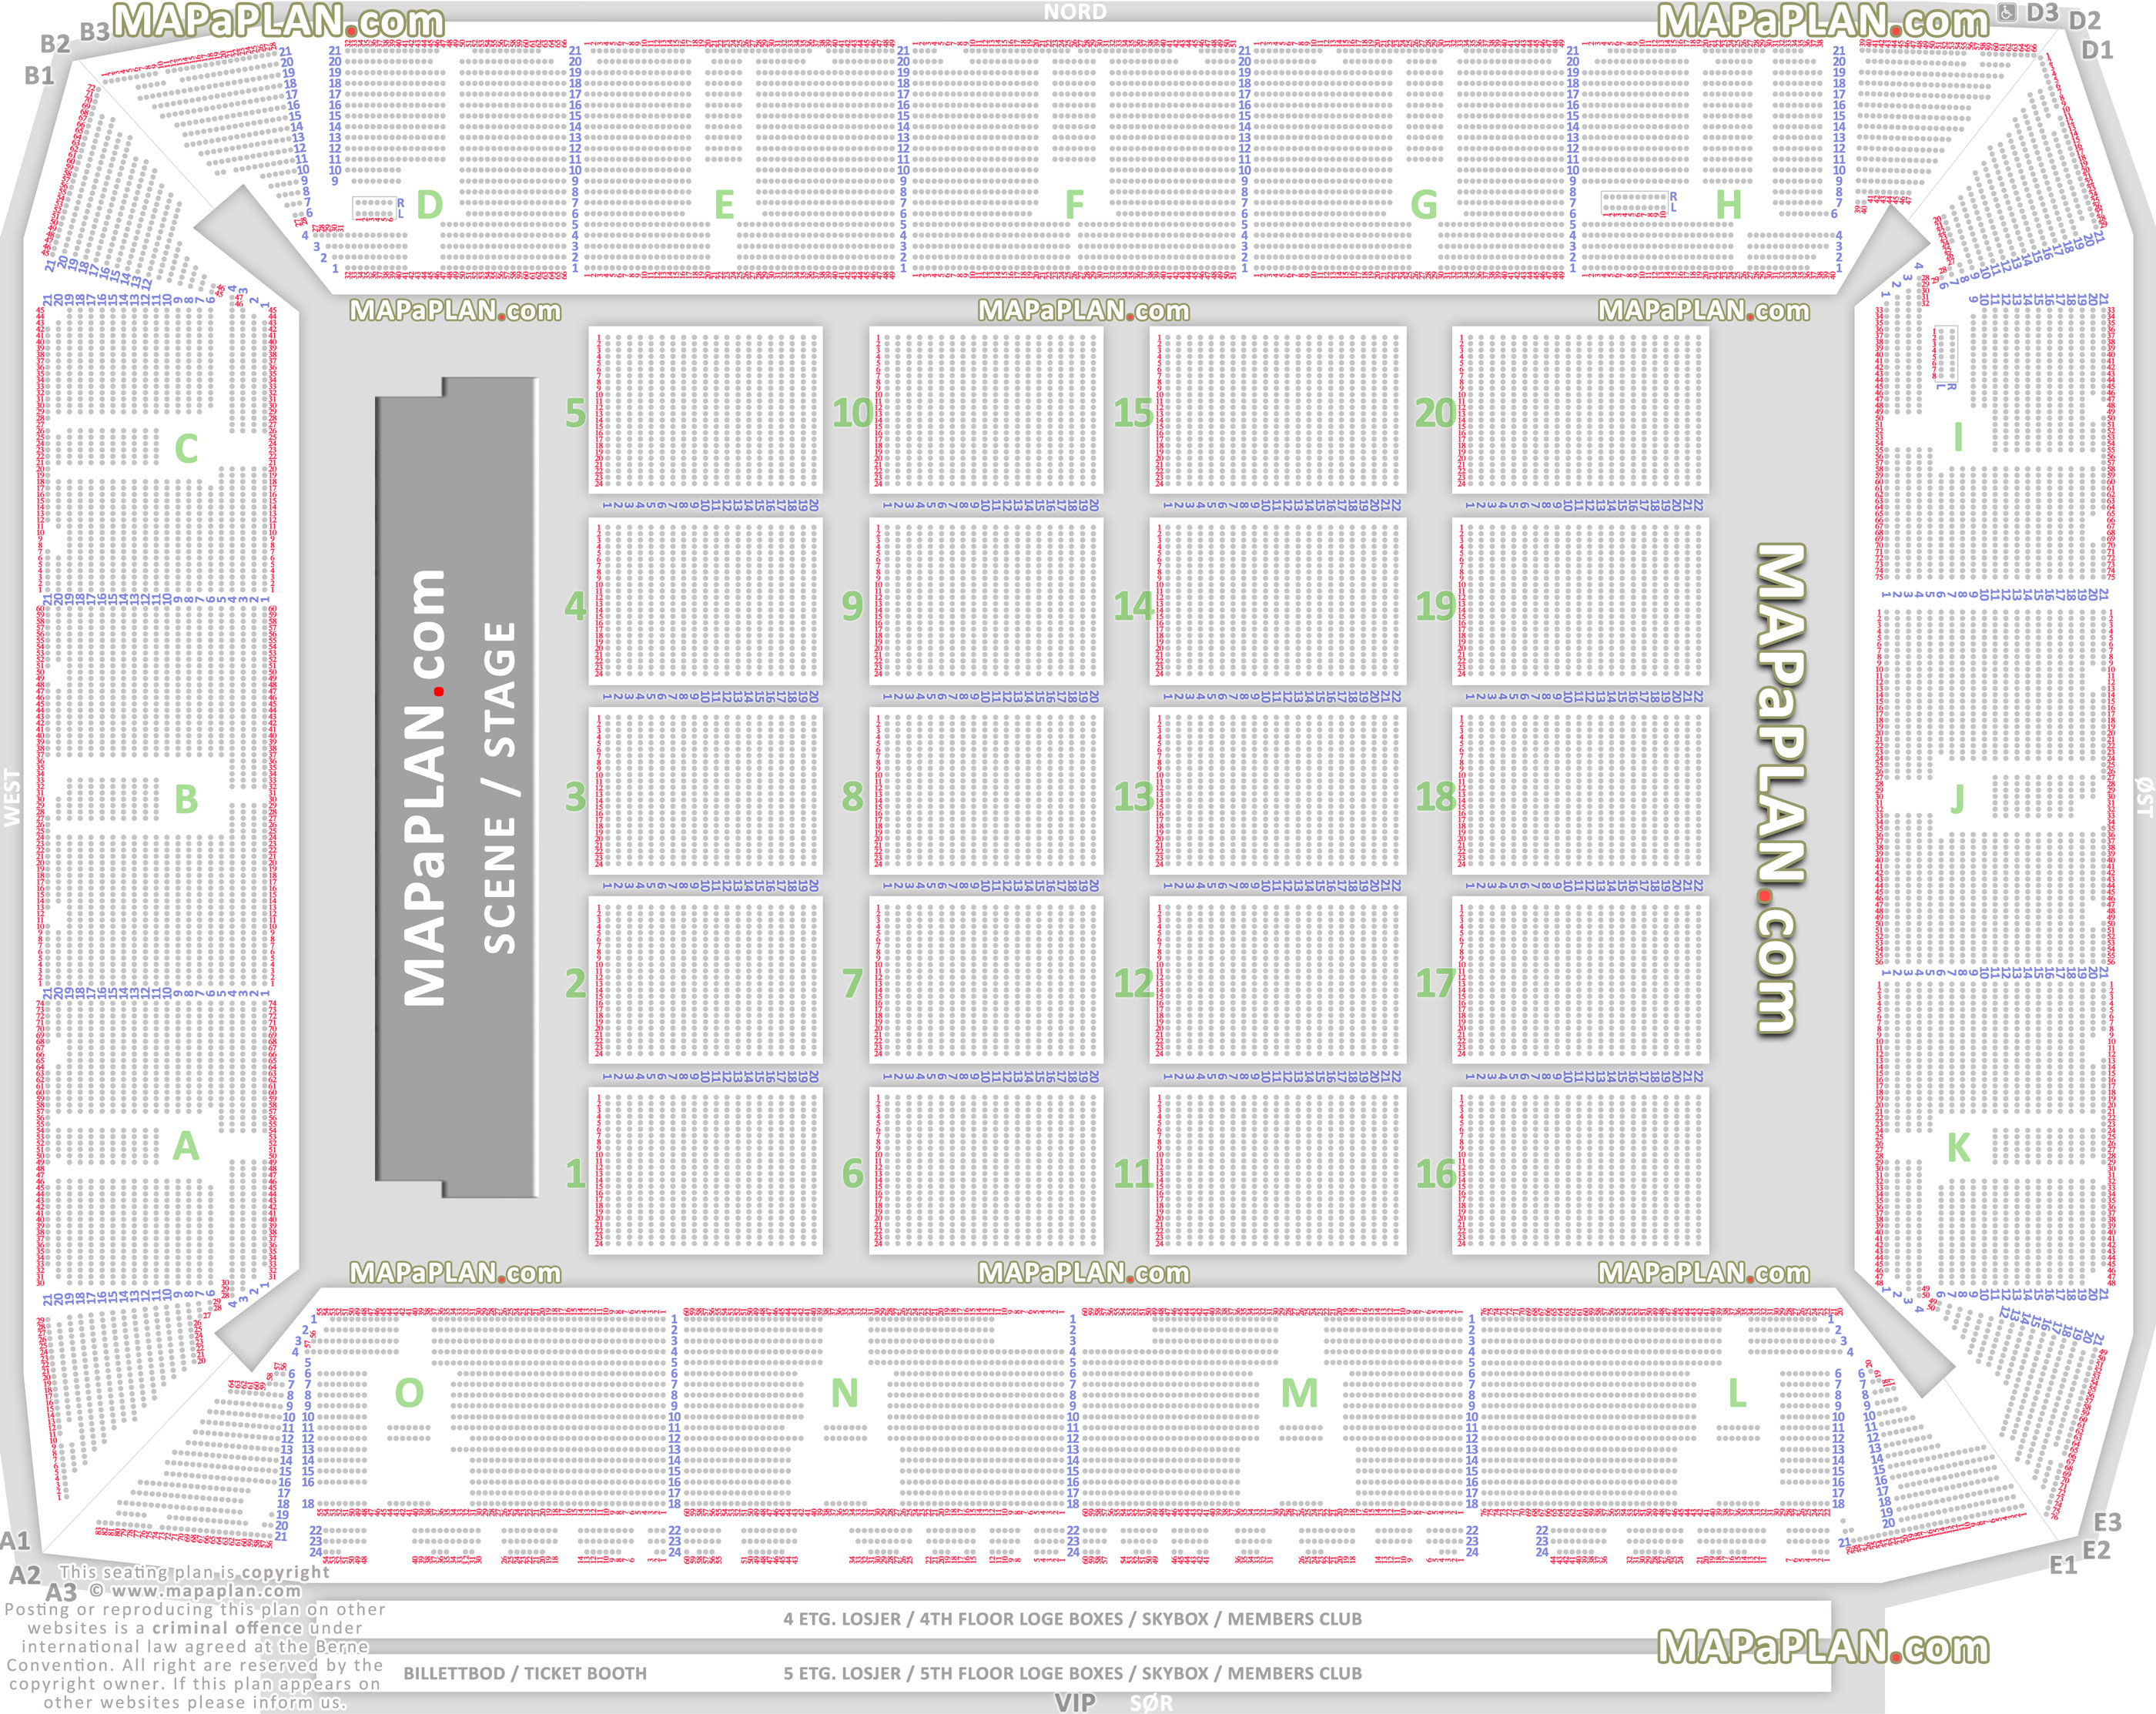 Telenor Arena - Detailed seat & row numbers concert floor plan